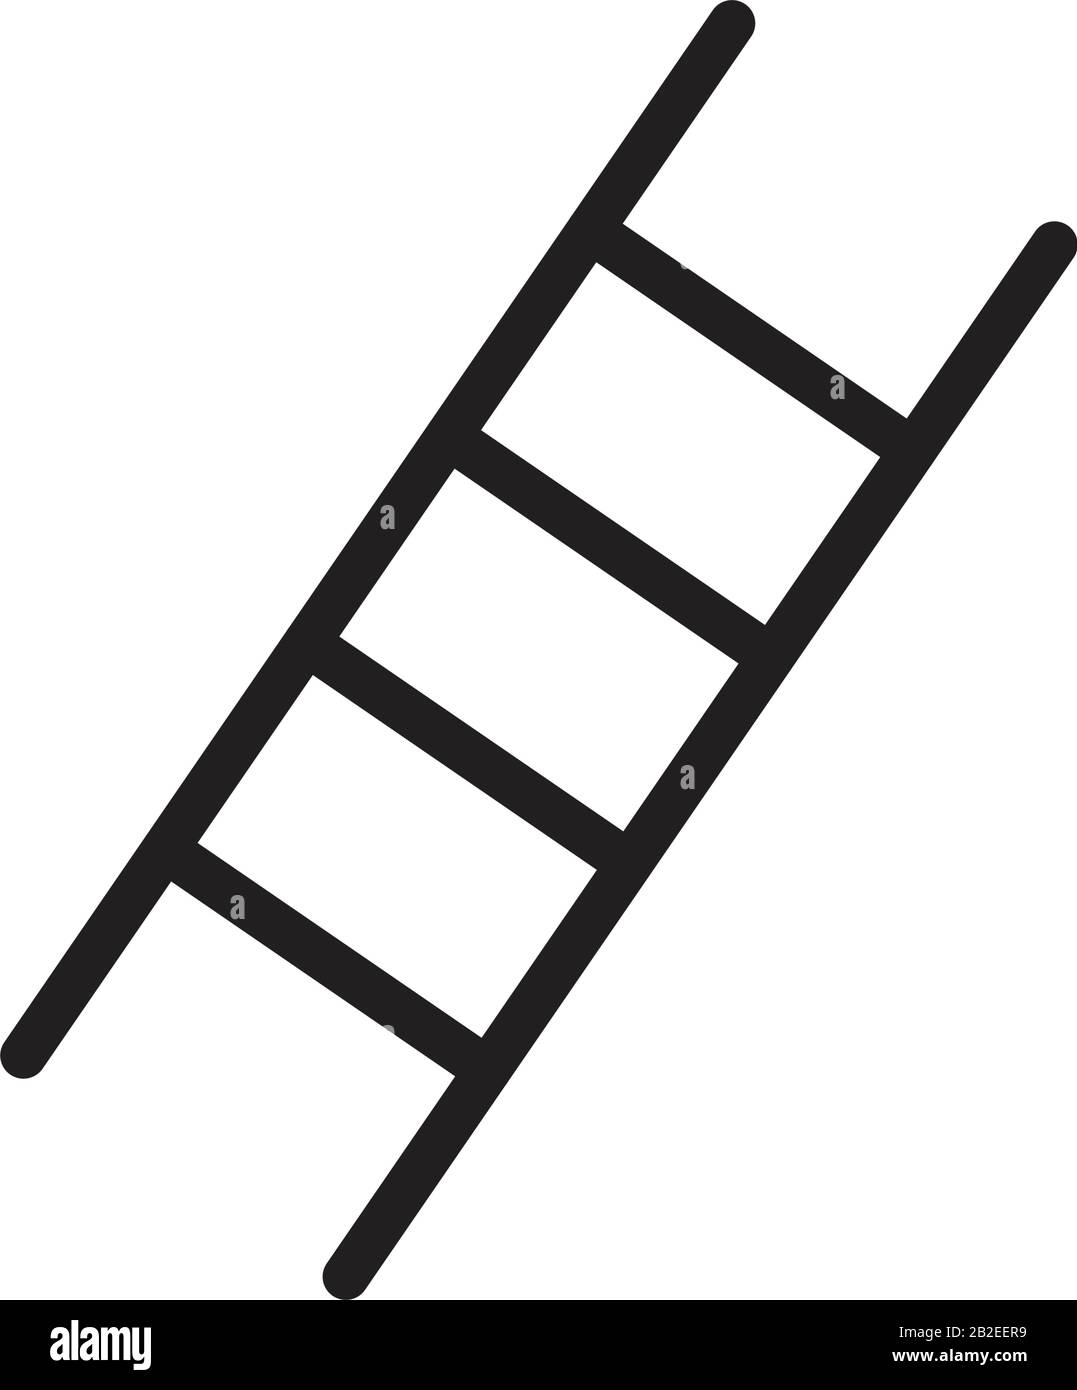 Treppensymbol-Vorlage in schwarzer Farbe editierbar. Treppenlippensymbol flache Vektorgrafiken für Grafik- und Webdesign. Stock Vektor